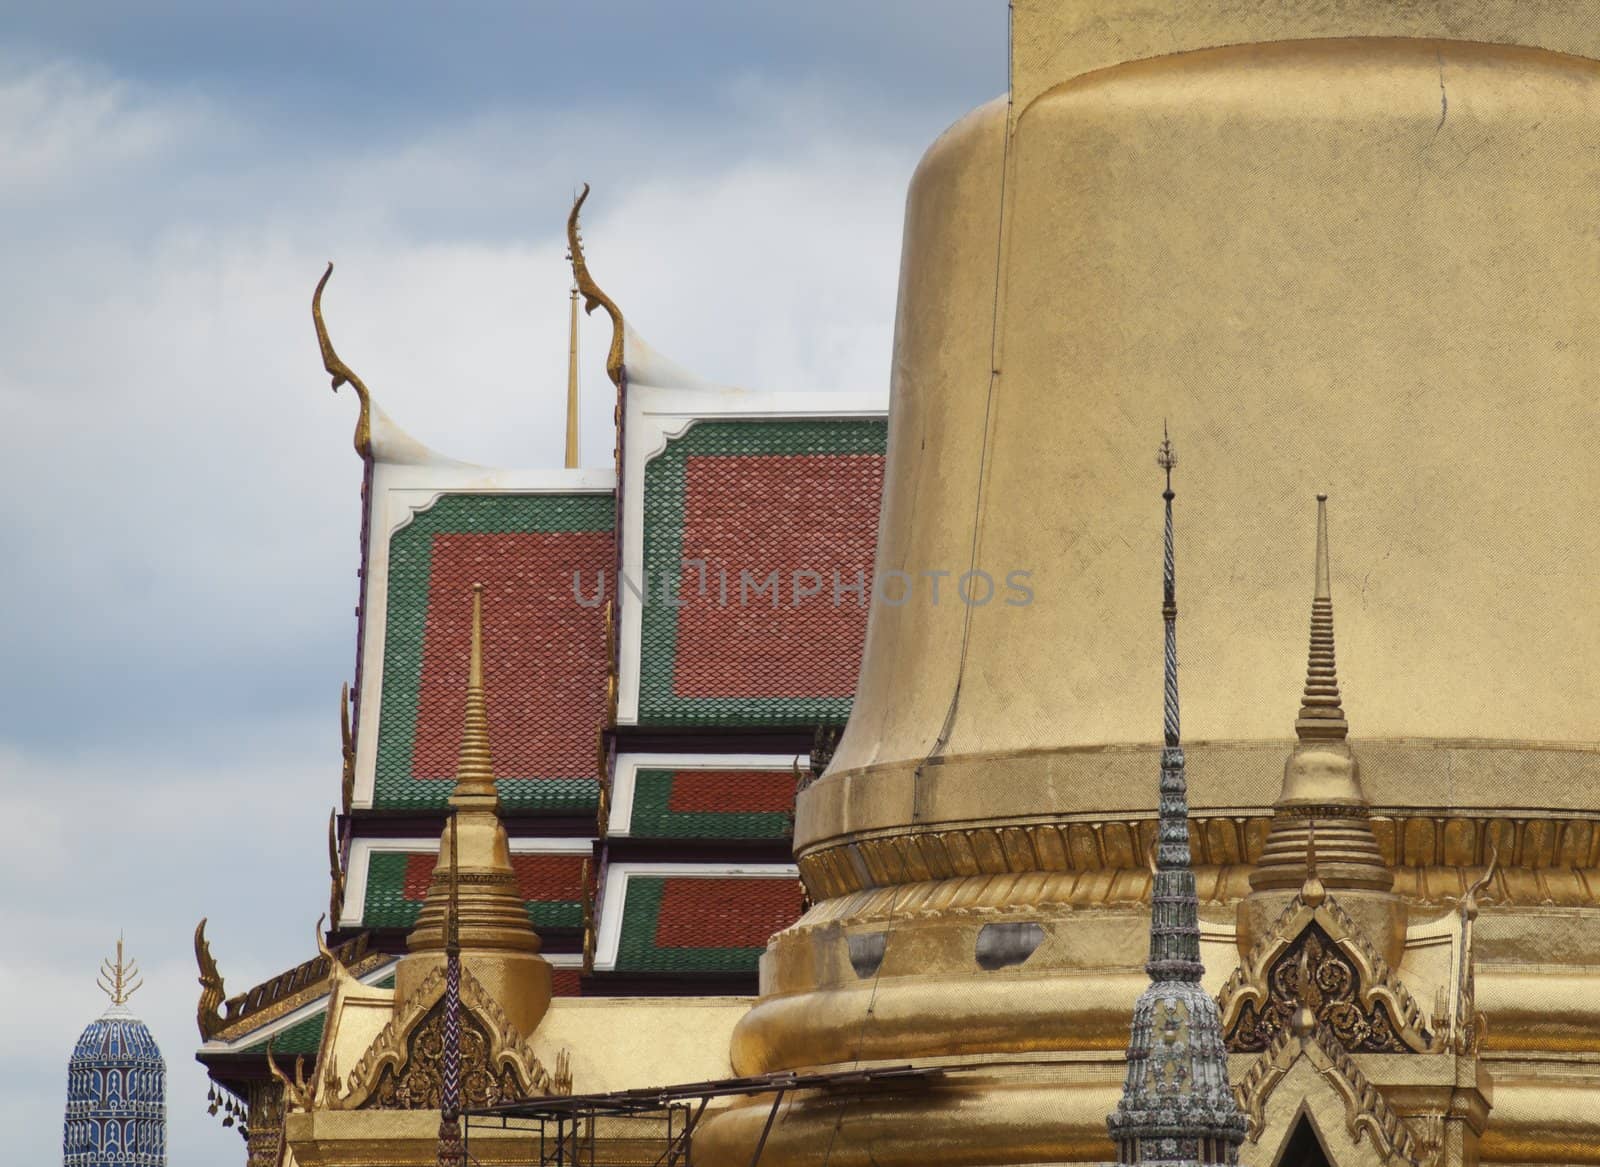 Roof closeup  of Grand Palace in Bangkok Thailand